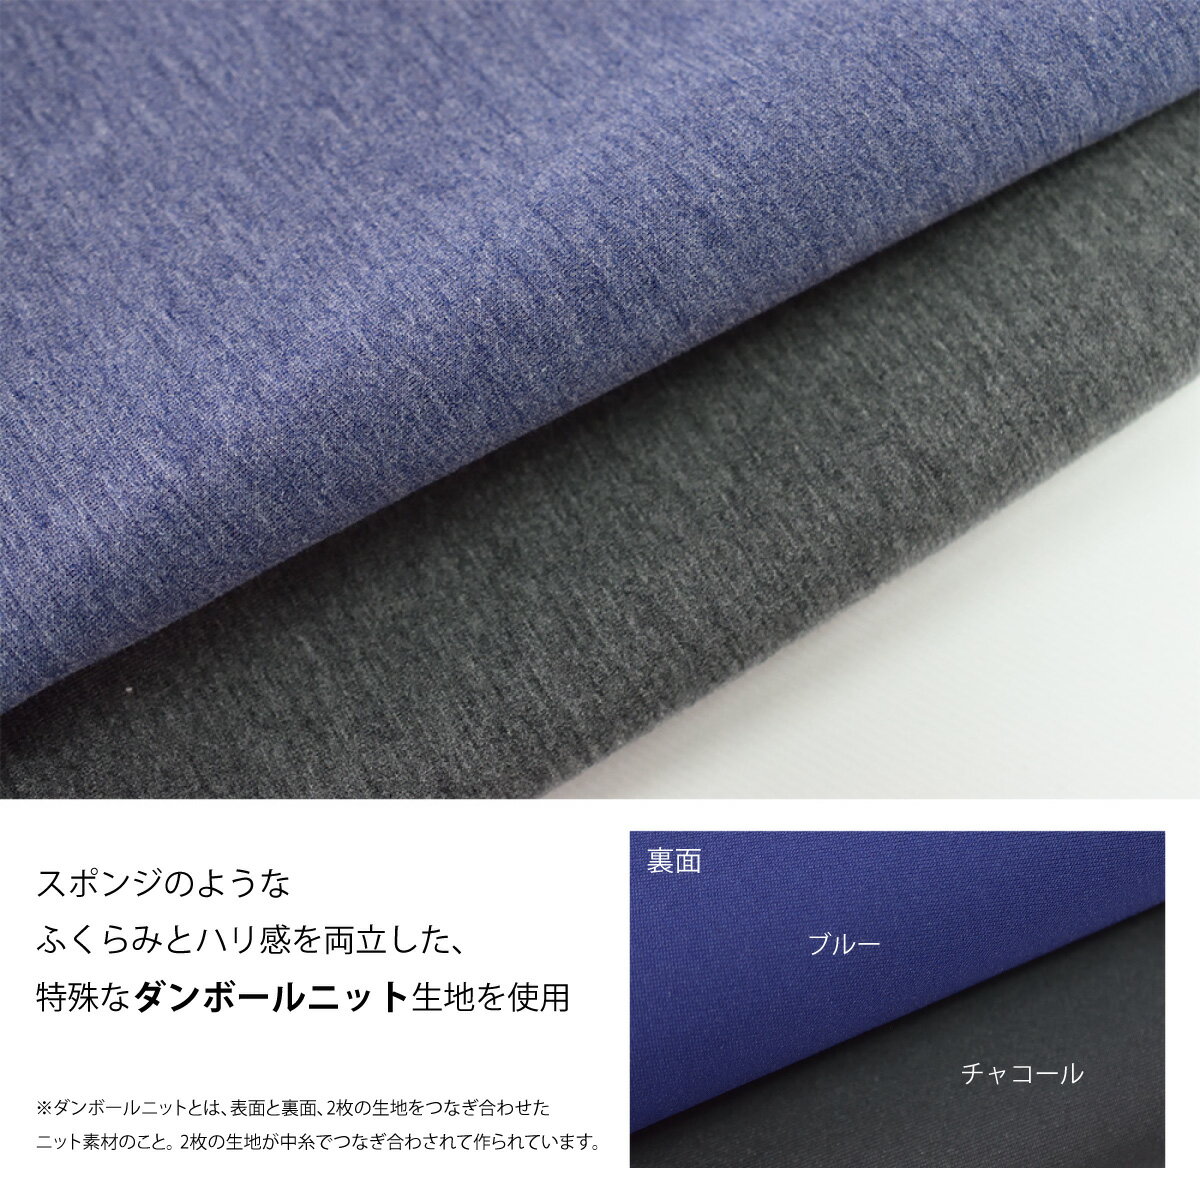 メンズ スウェットパンツ 日本製 暖かい セットアップ ストレッチ チャコール ブルー YMP-003 2